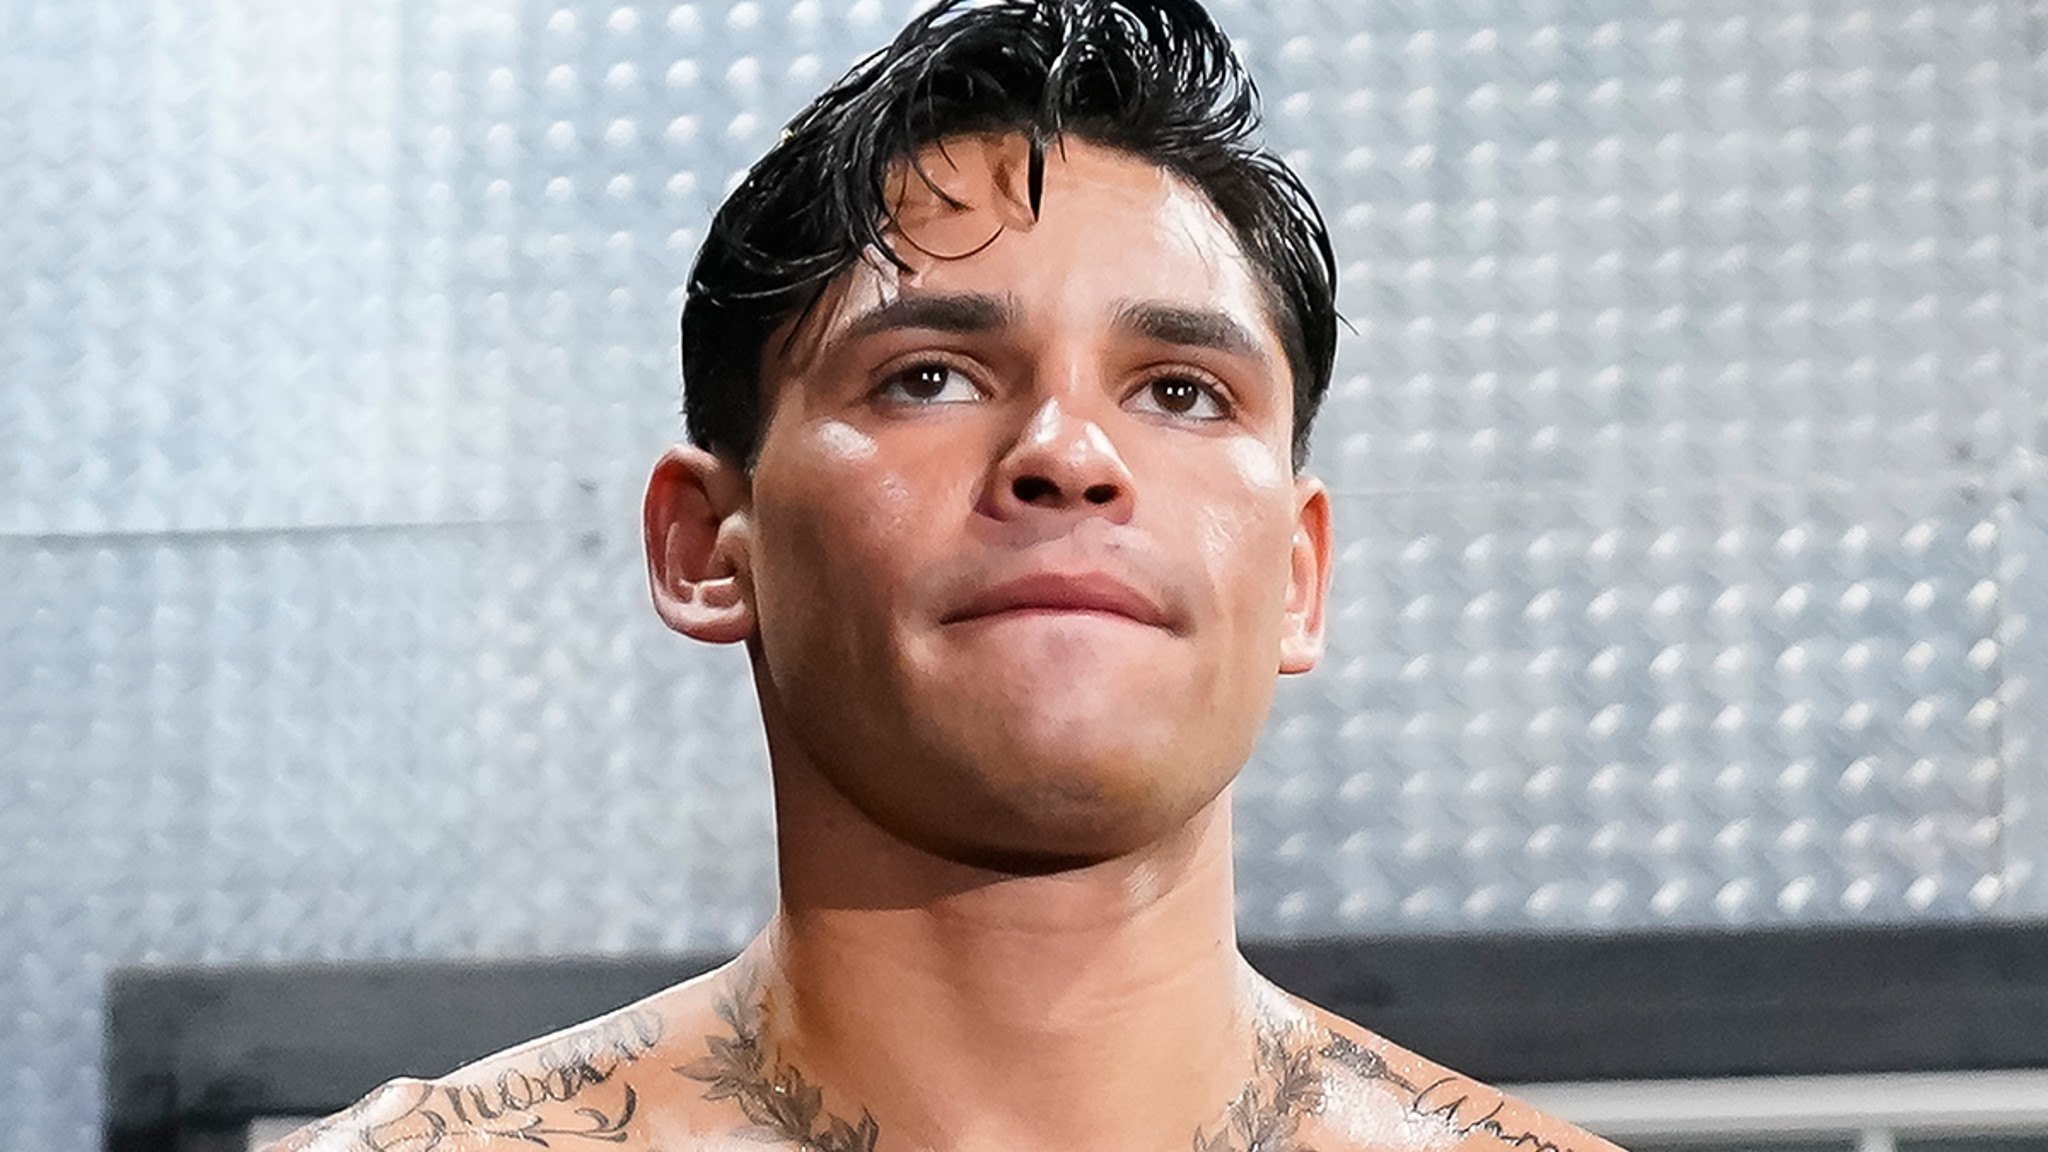 Ryan Garcia a été testé positif à la DEP avant le combat contre Haney, le boxeur nie avoir triché